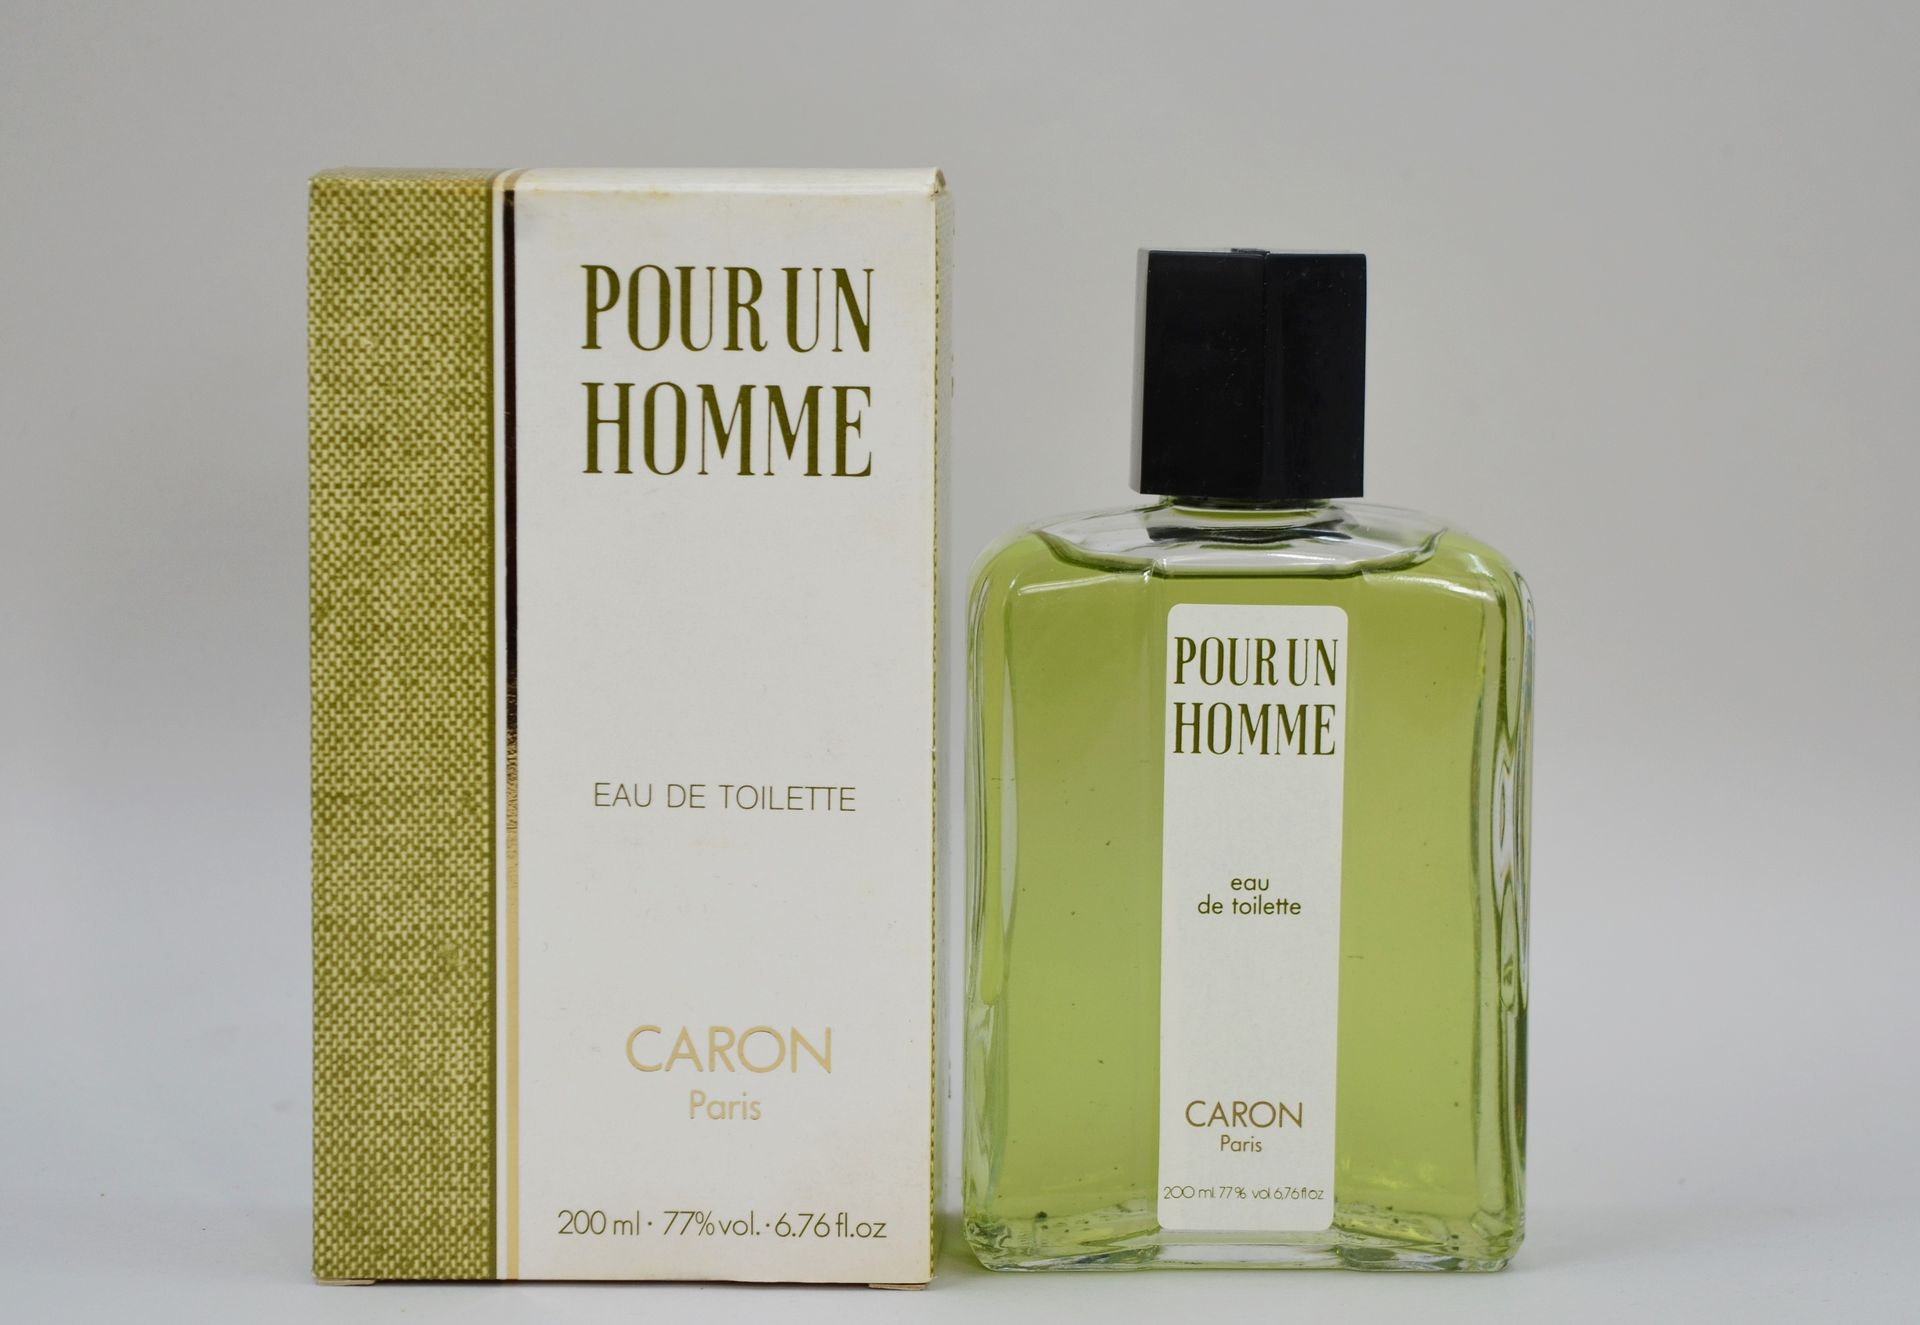 Null CARON "对于一个人来说

盒内装有淡香水，容量为200毫升。